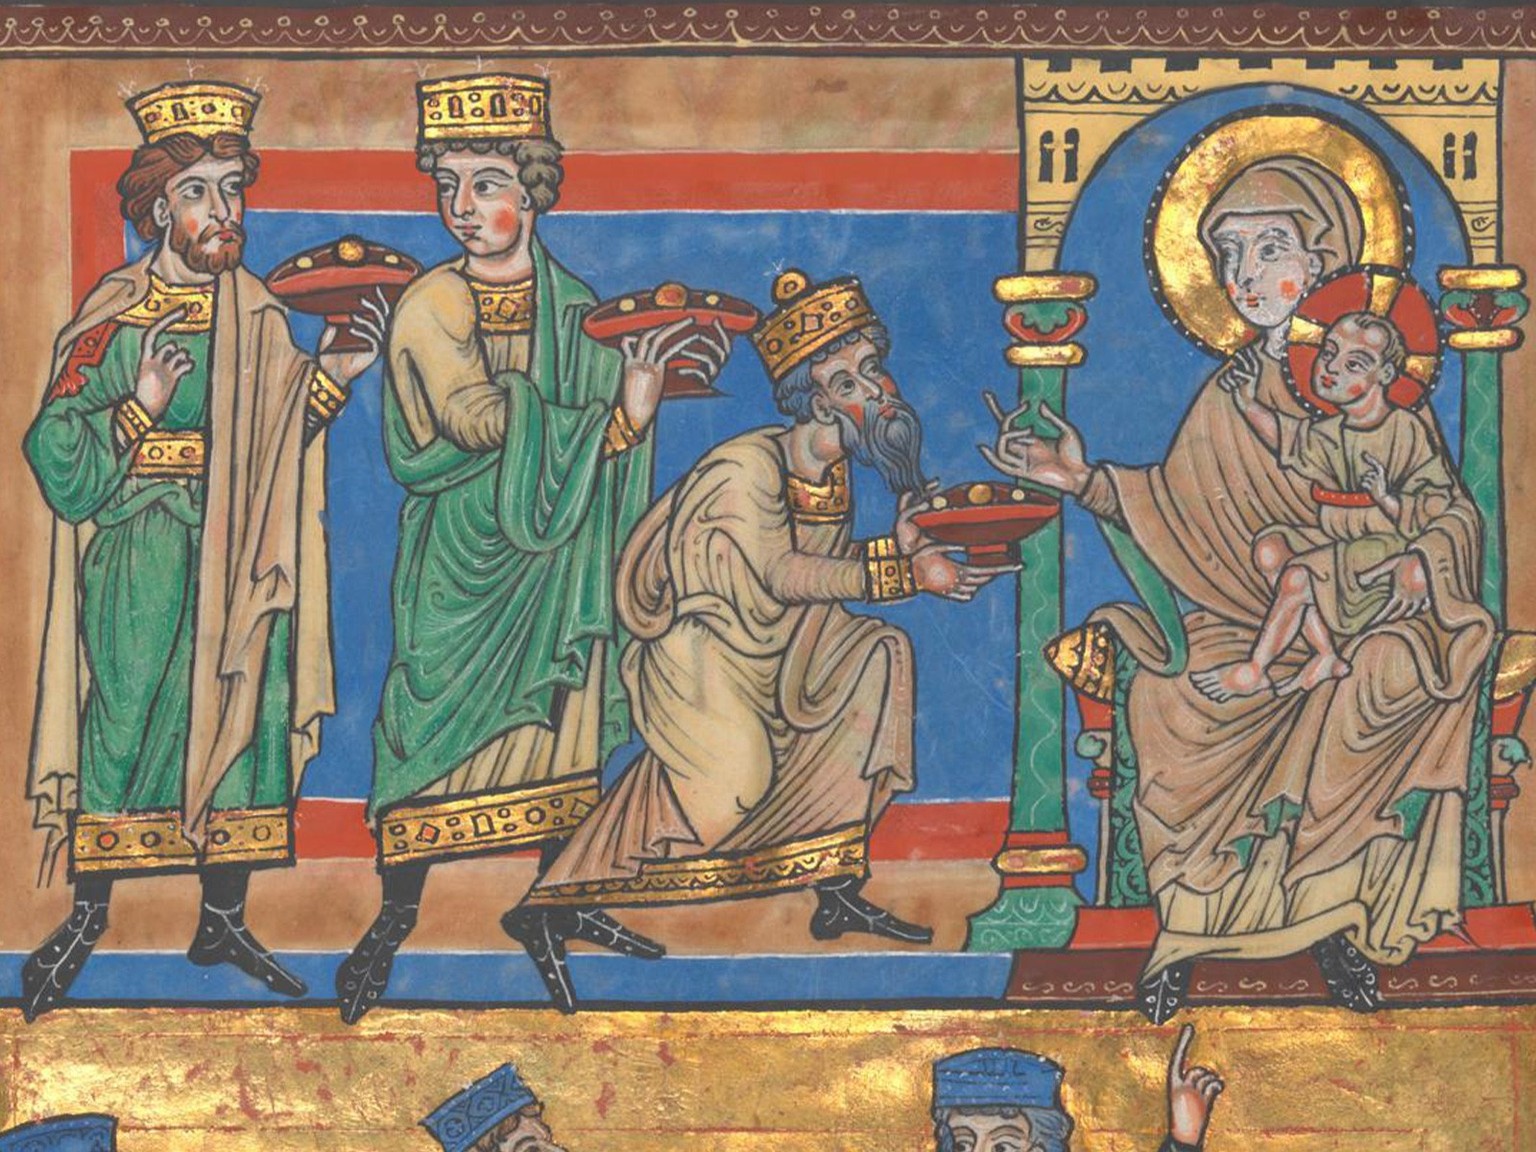 Les Rois mages apportent de riches présents à l’Enfant Jésus. Représentation issue du Codex d’or de l’Escurial, vers 1220.
https://digital.blb-karlsruhe.de/blbdd/content/pageview/1217340